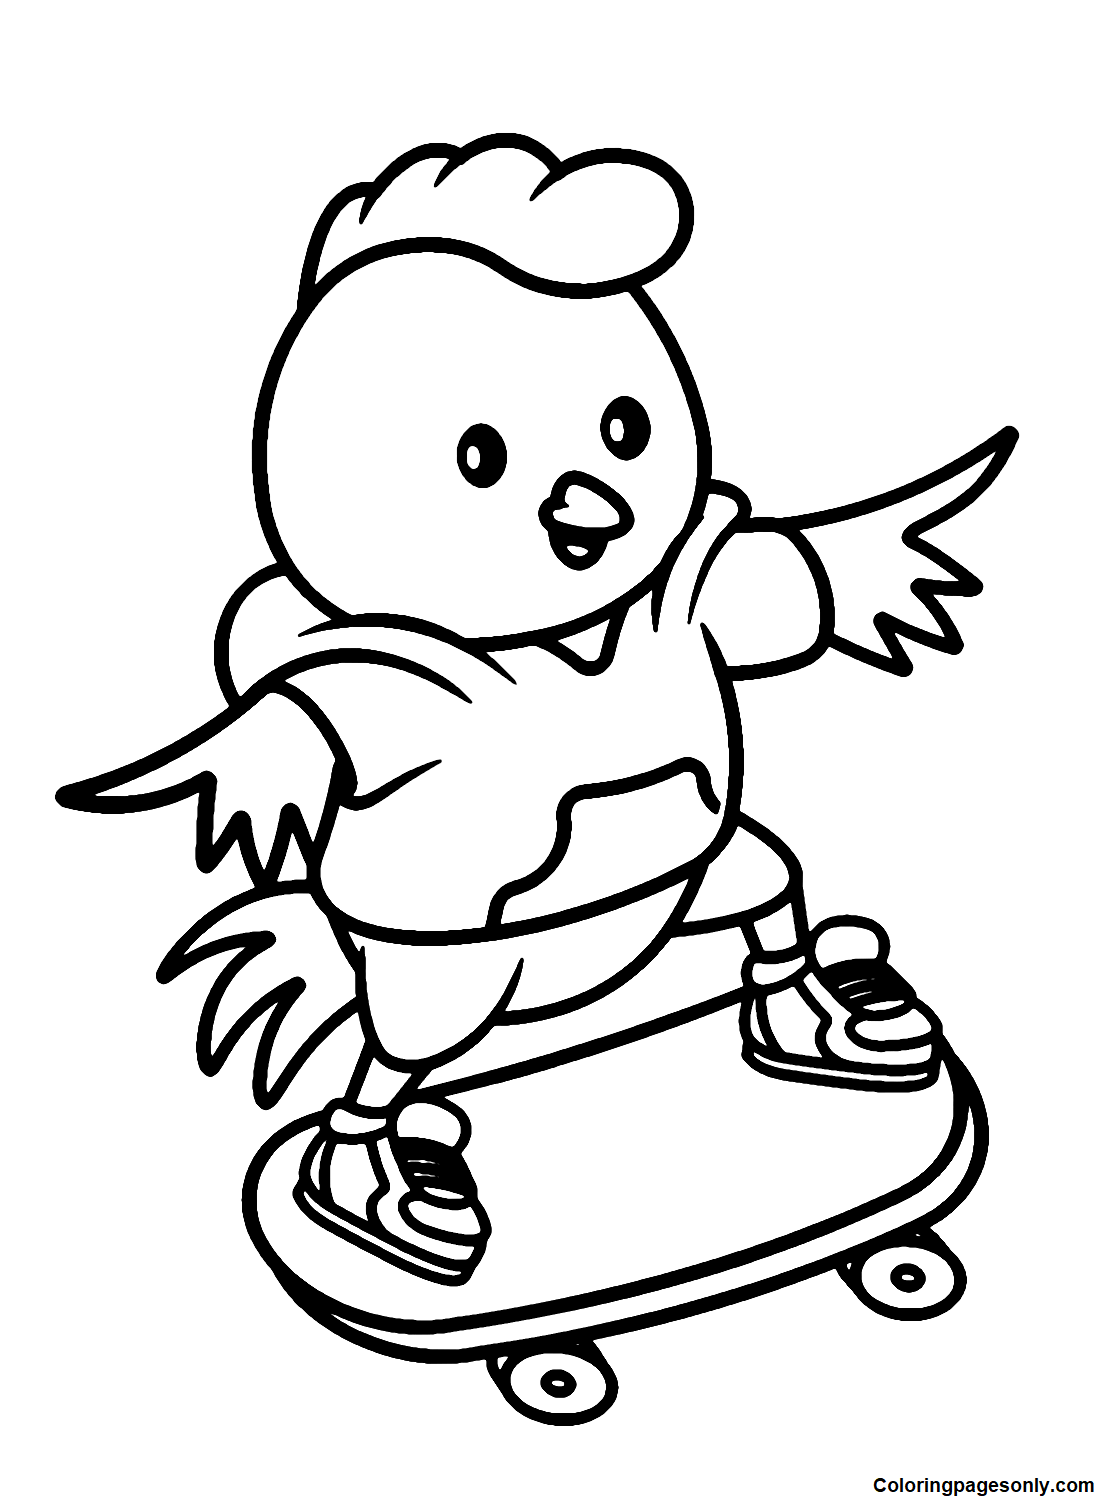 Цыплёнок играет на скейтборде. Мультфильм из мультфильма "Мальчишеский"